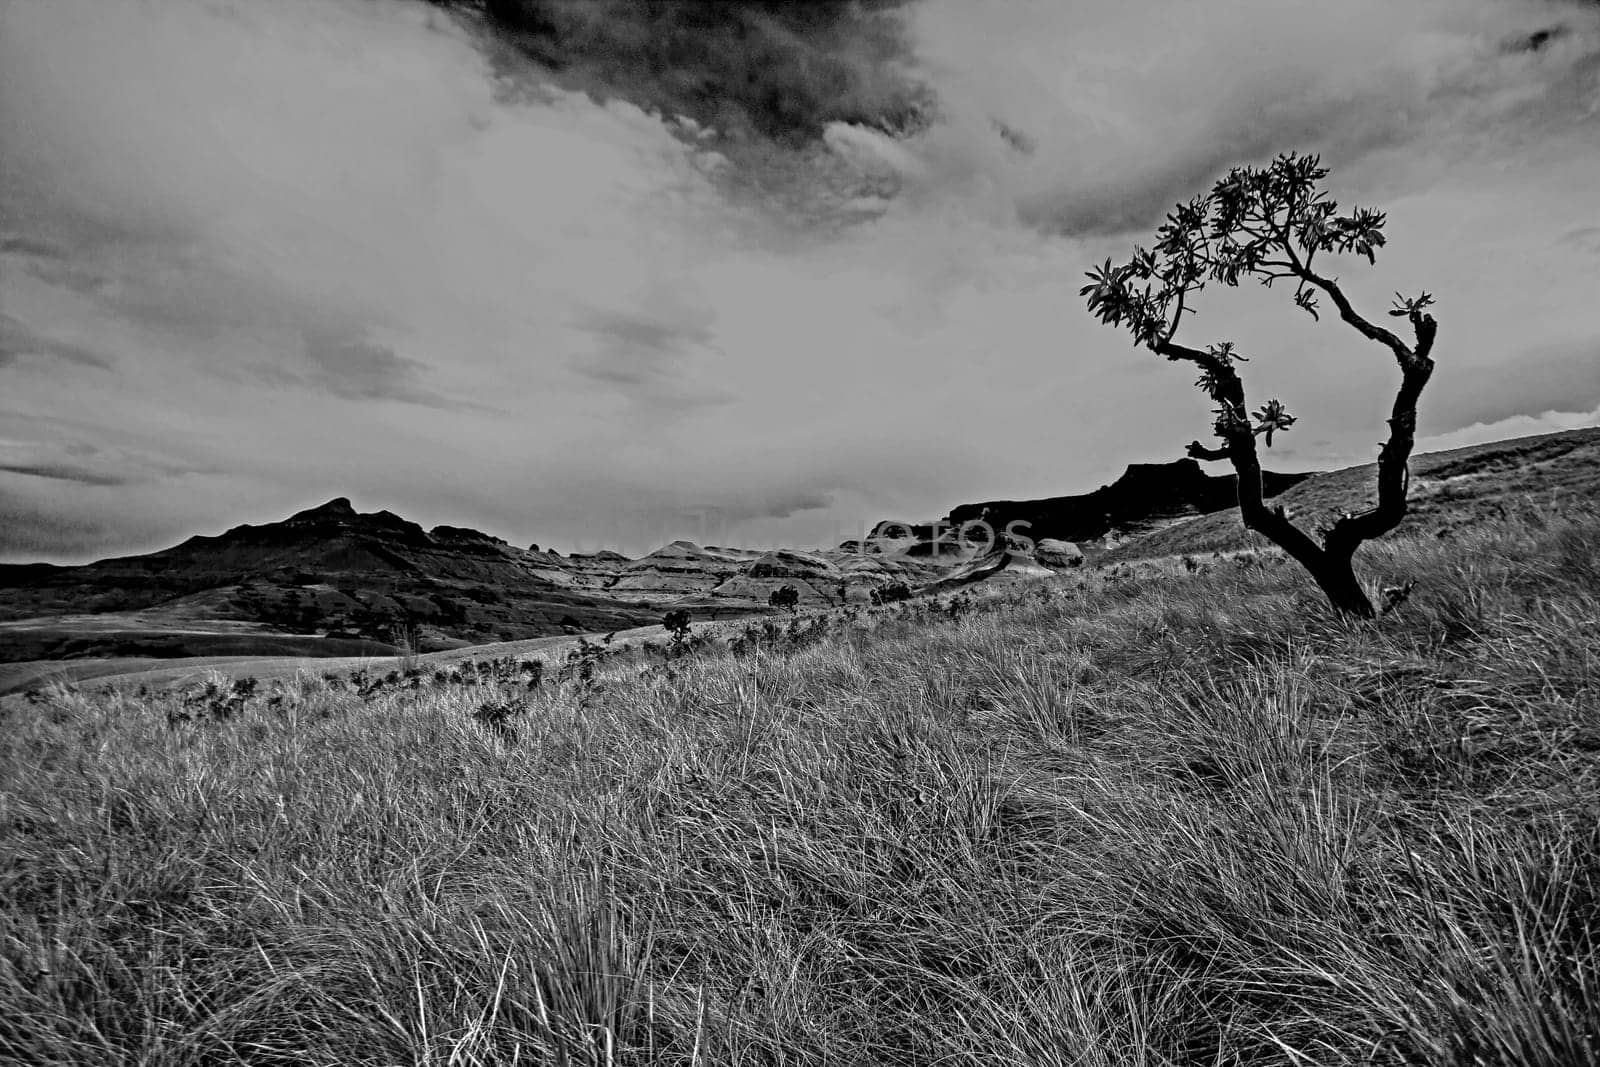 Drakensberg Mountain scene 15591 by kobus_peche